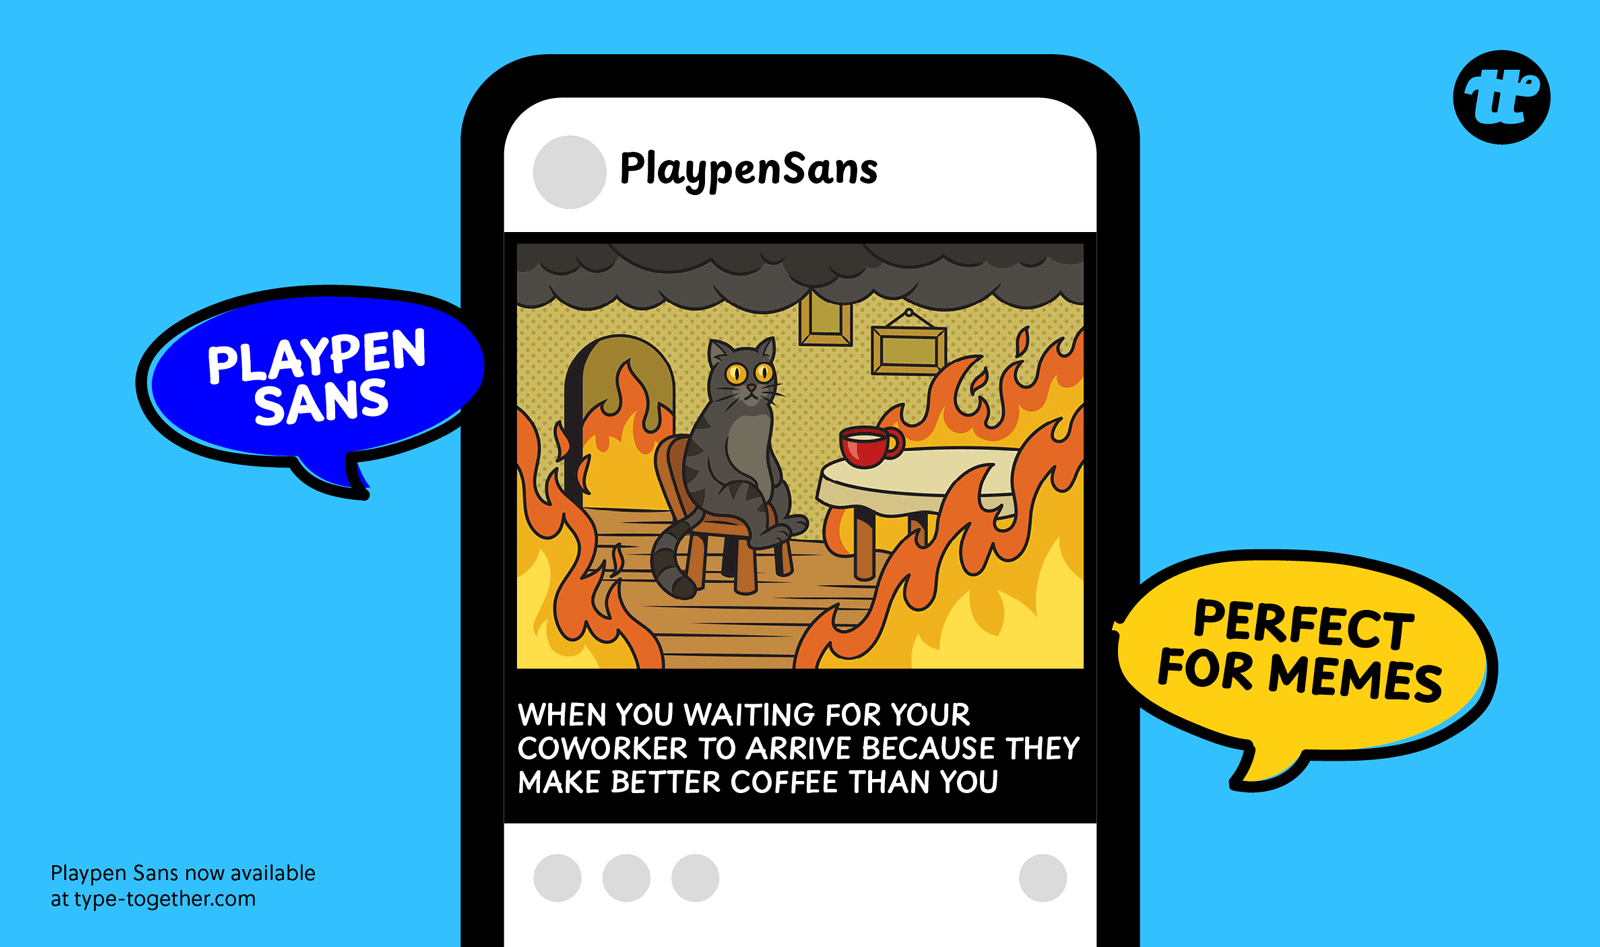 Playpen Sans release